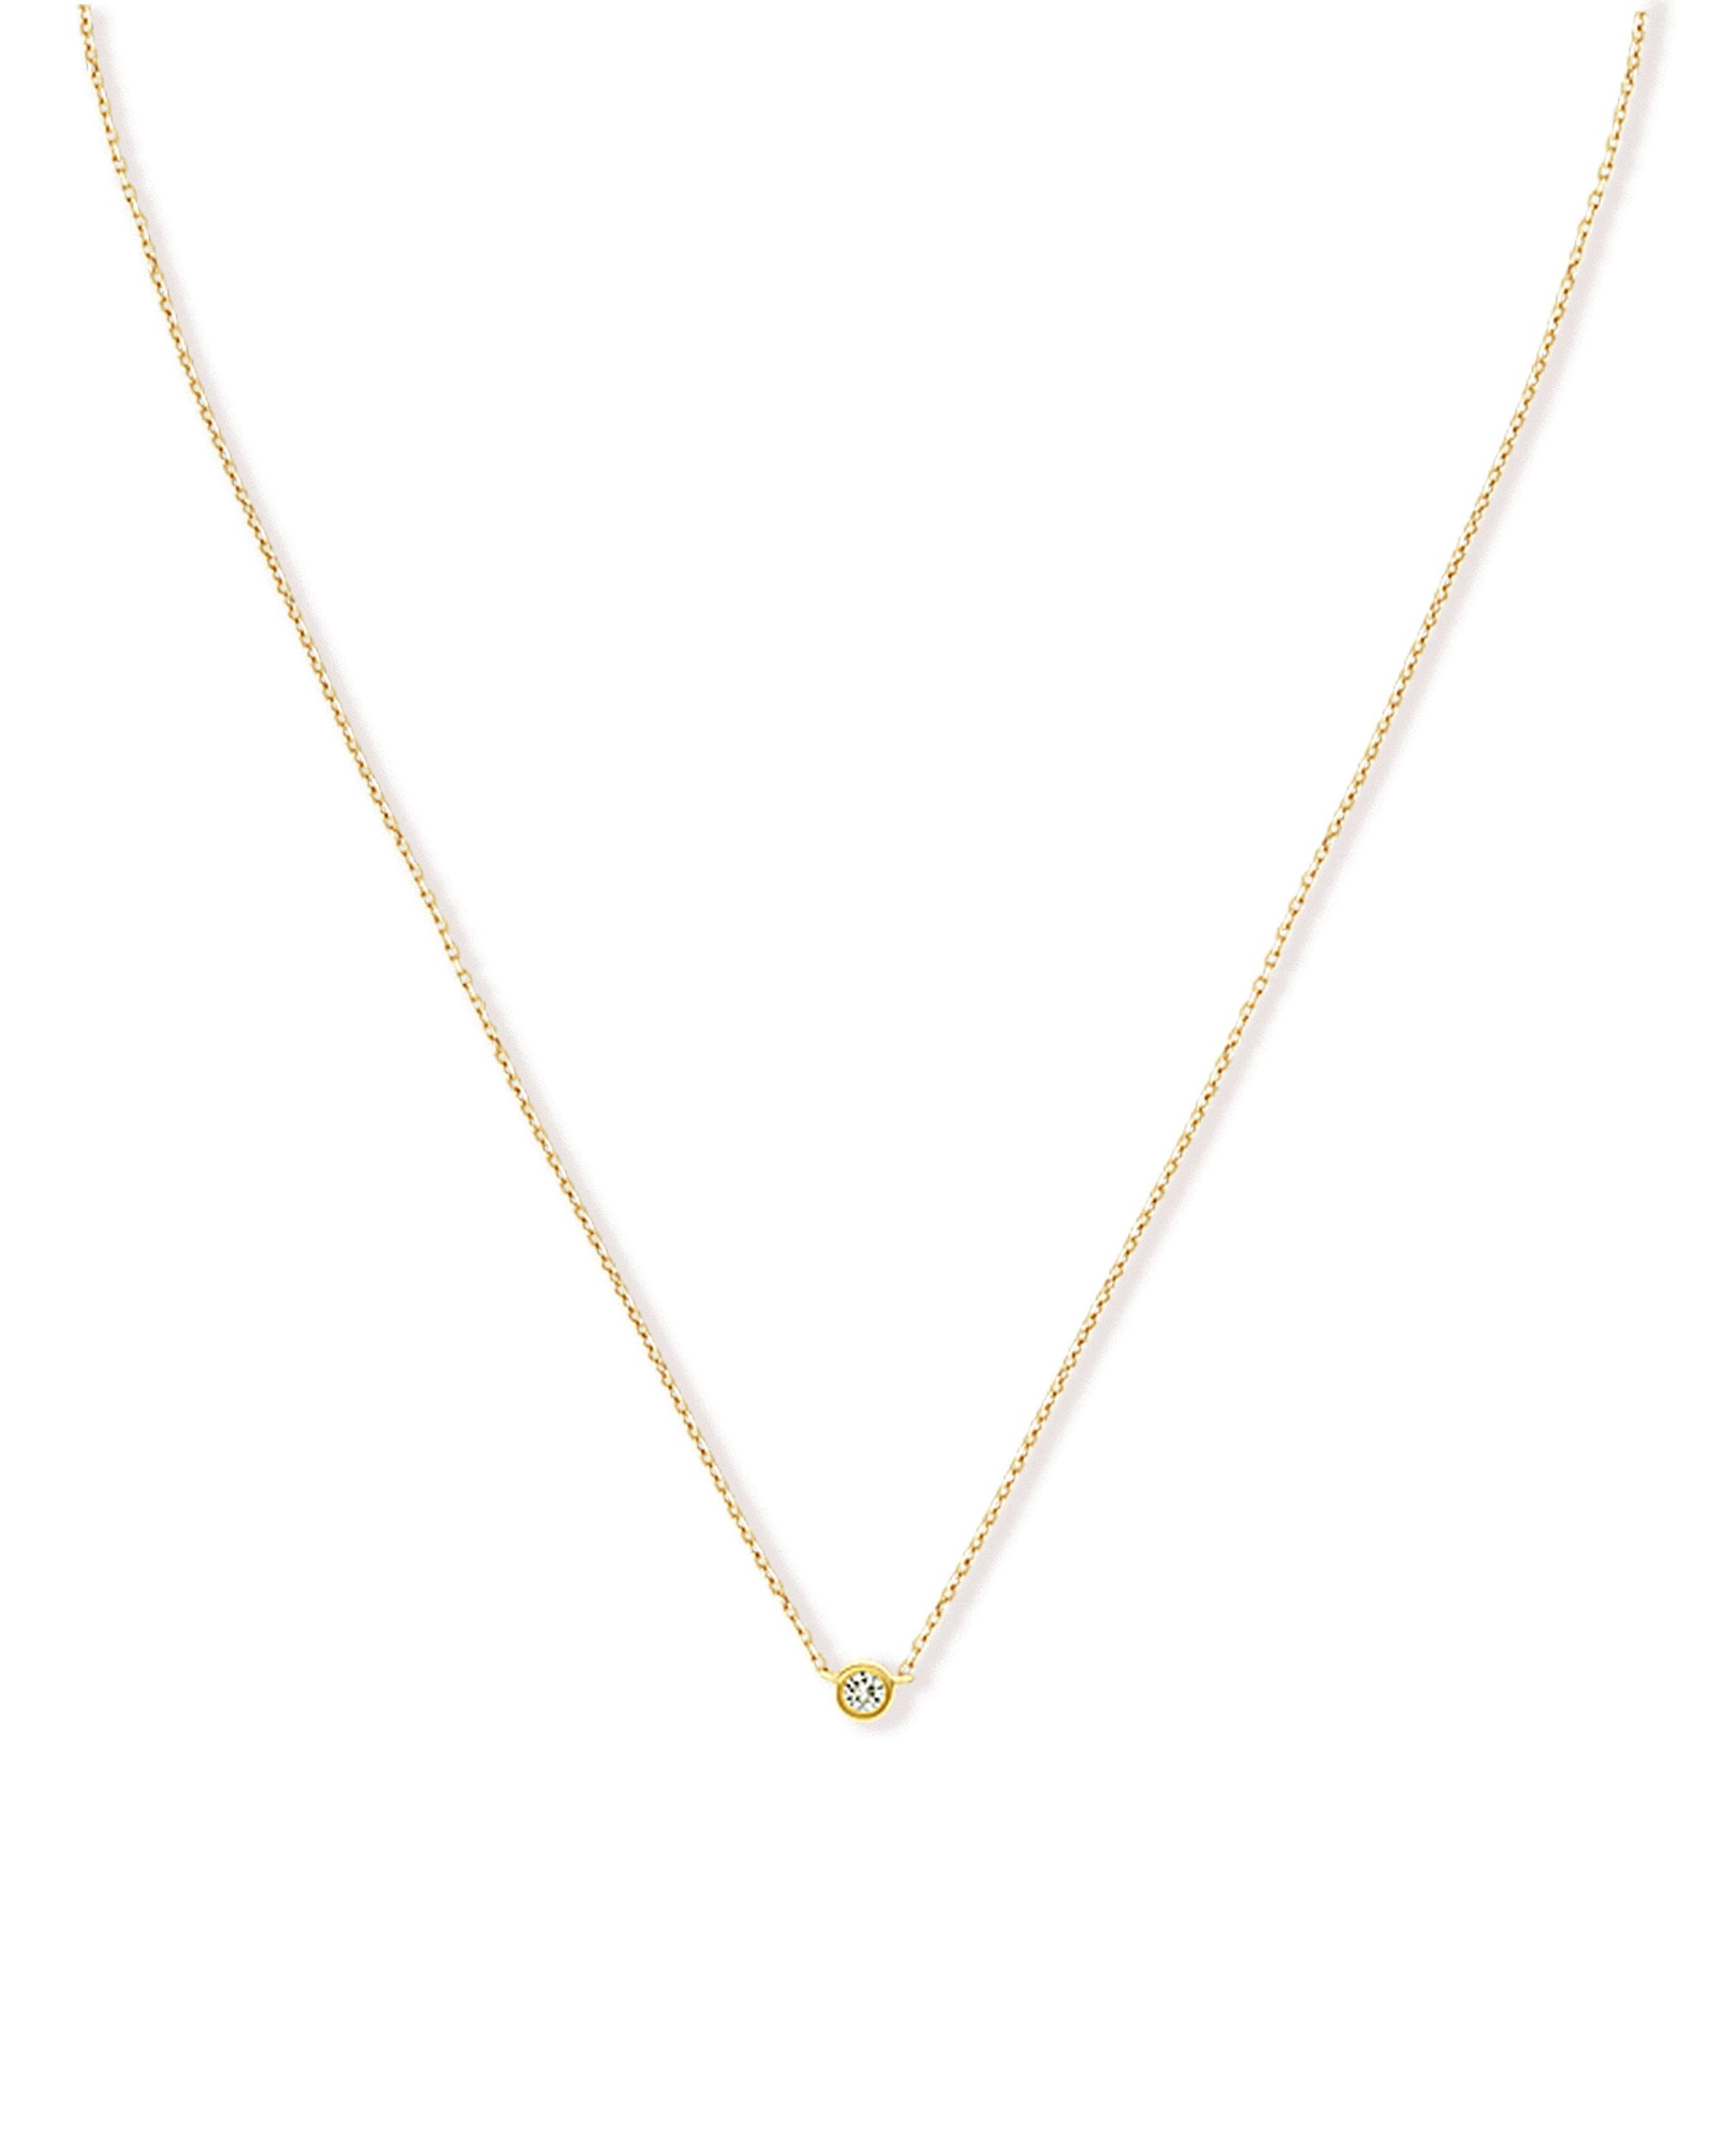 Soleil No. 2 Diamond Pendant Necklace